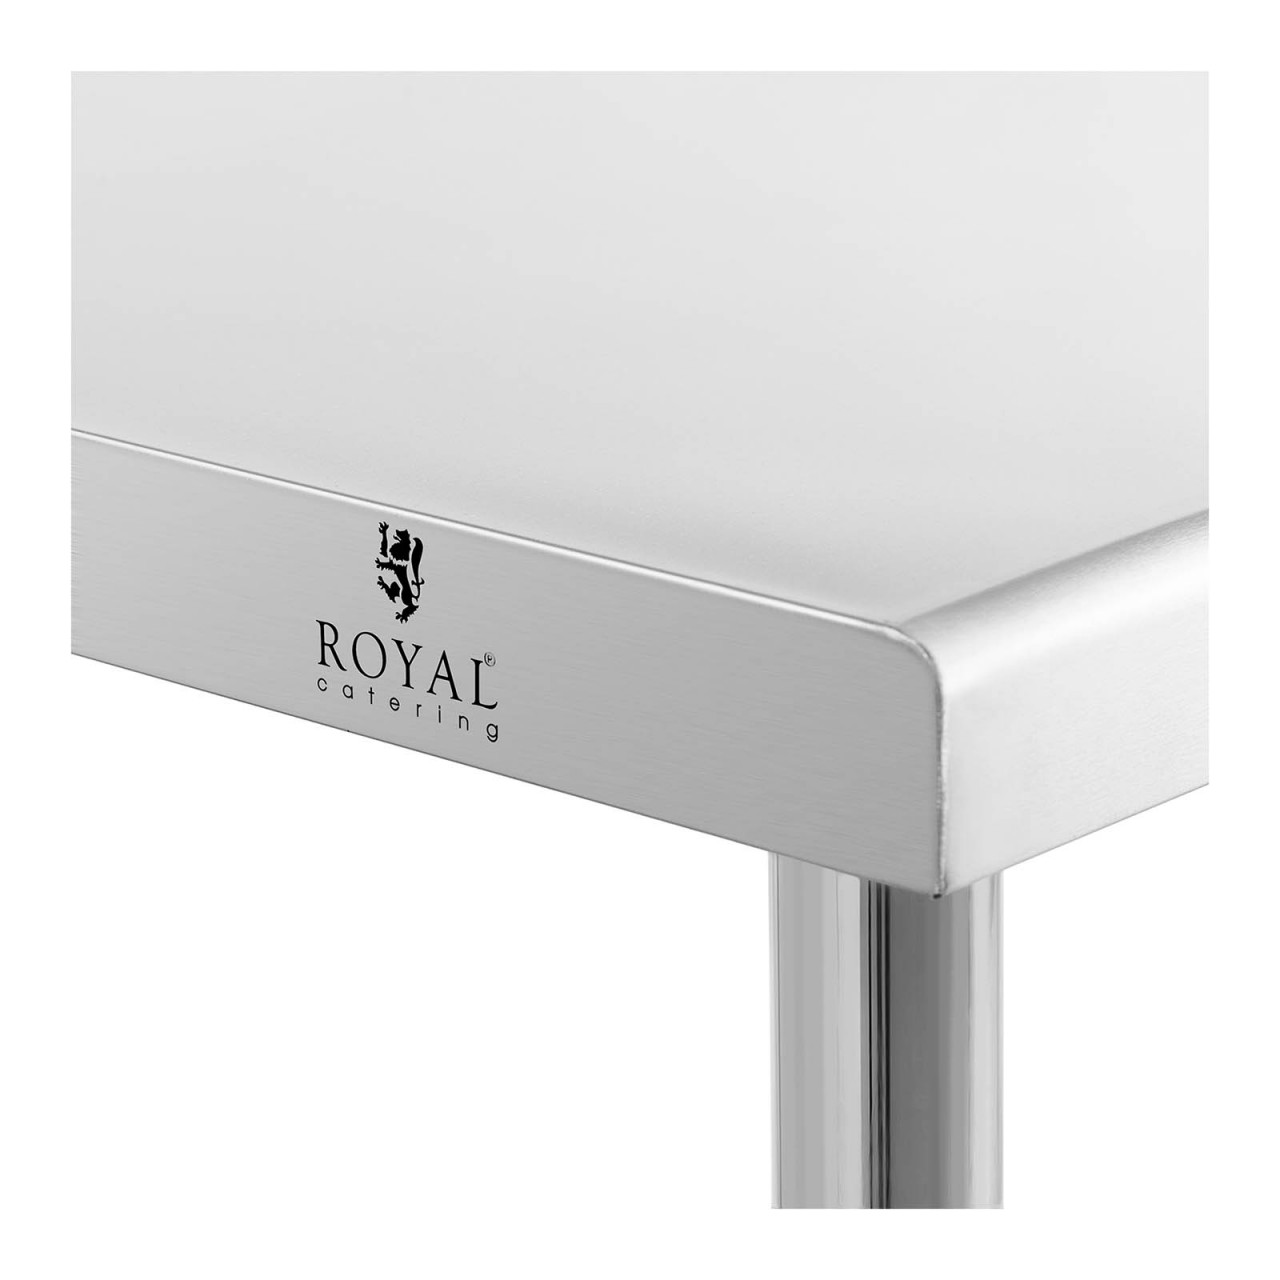 Pracovní stůl z ušlechtilé oceli 200 x 70 cm nosnost 95 kg - Pracovní stoly Royal Catering